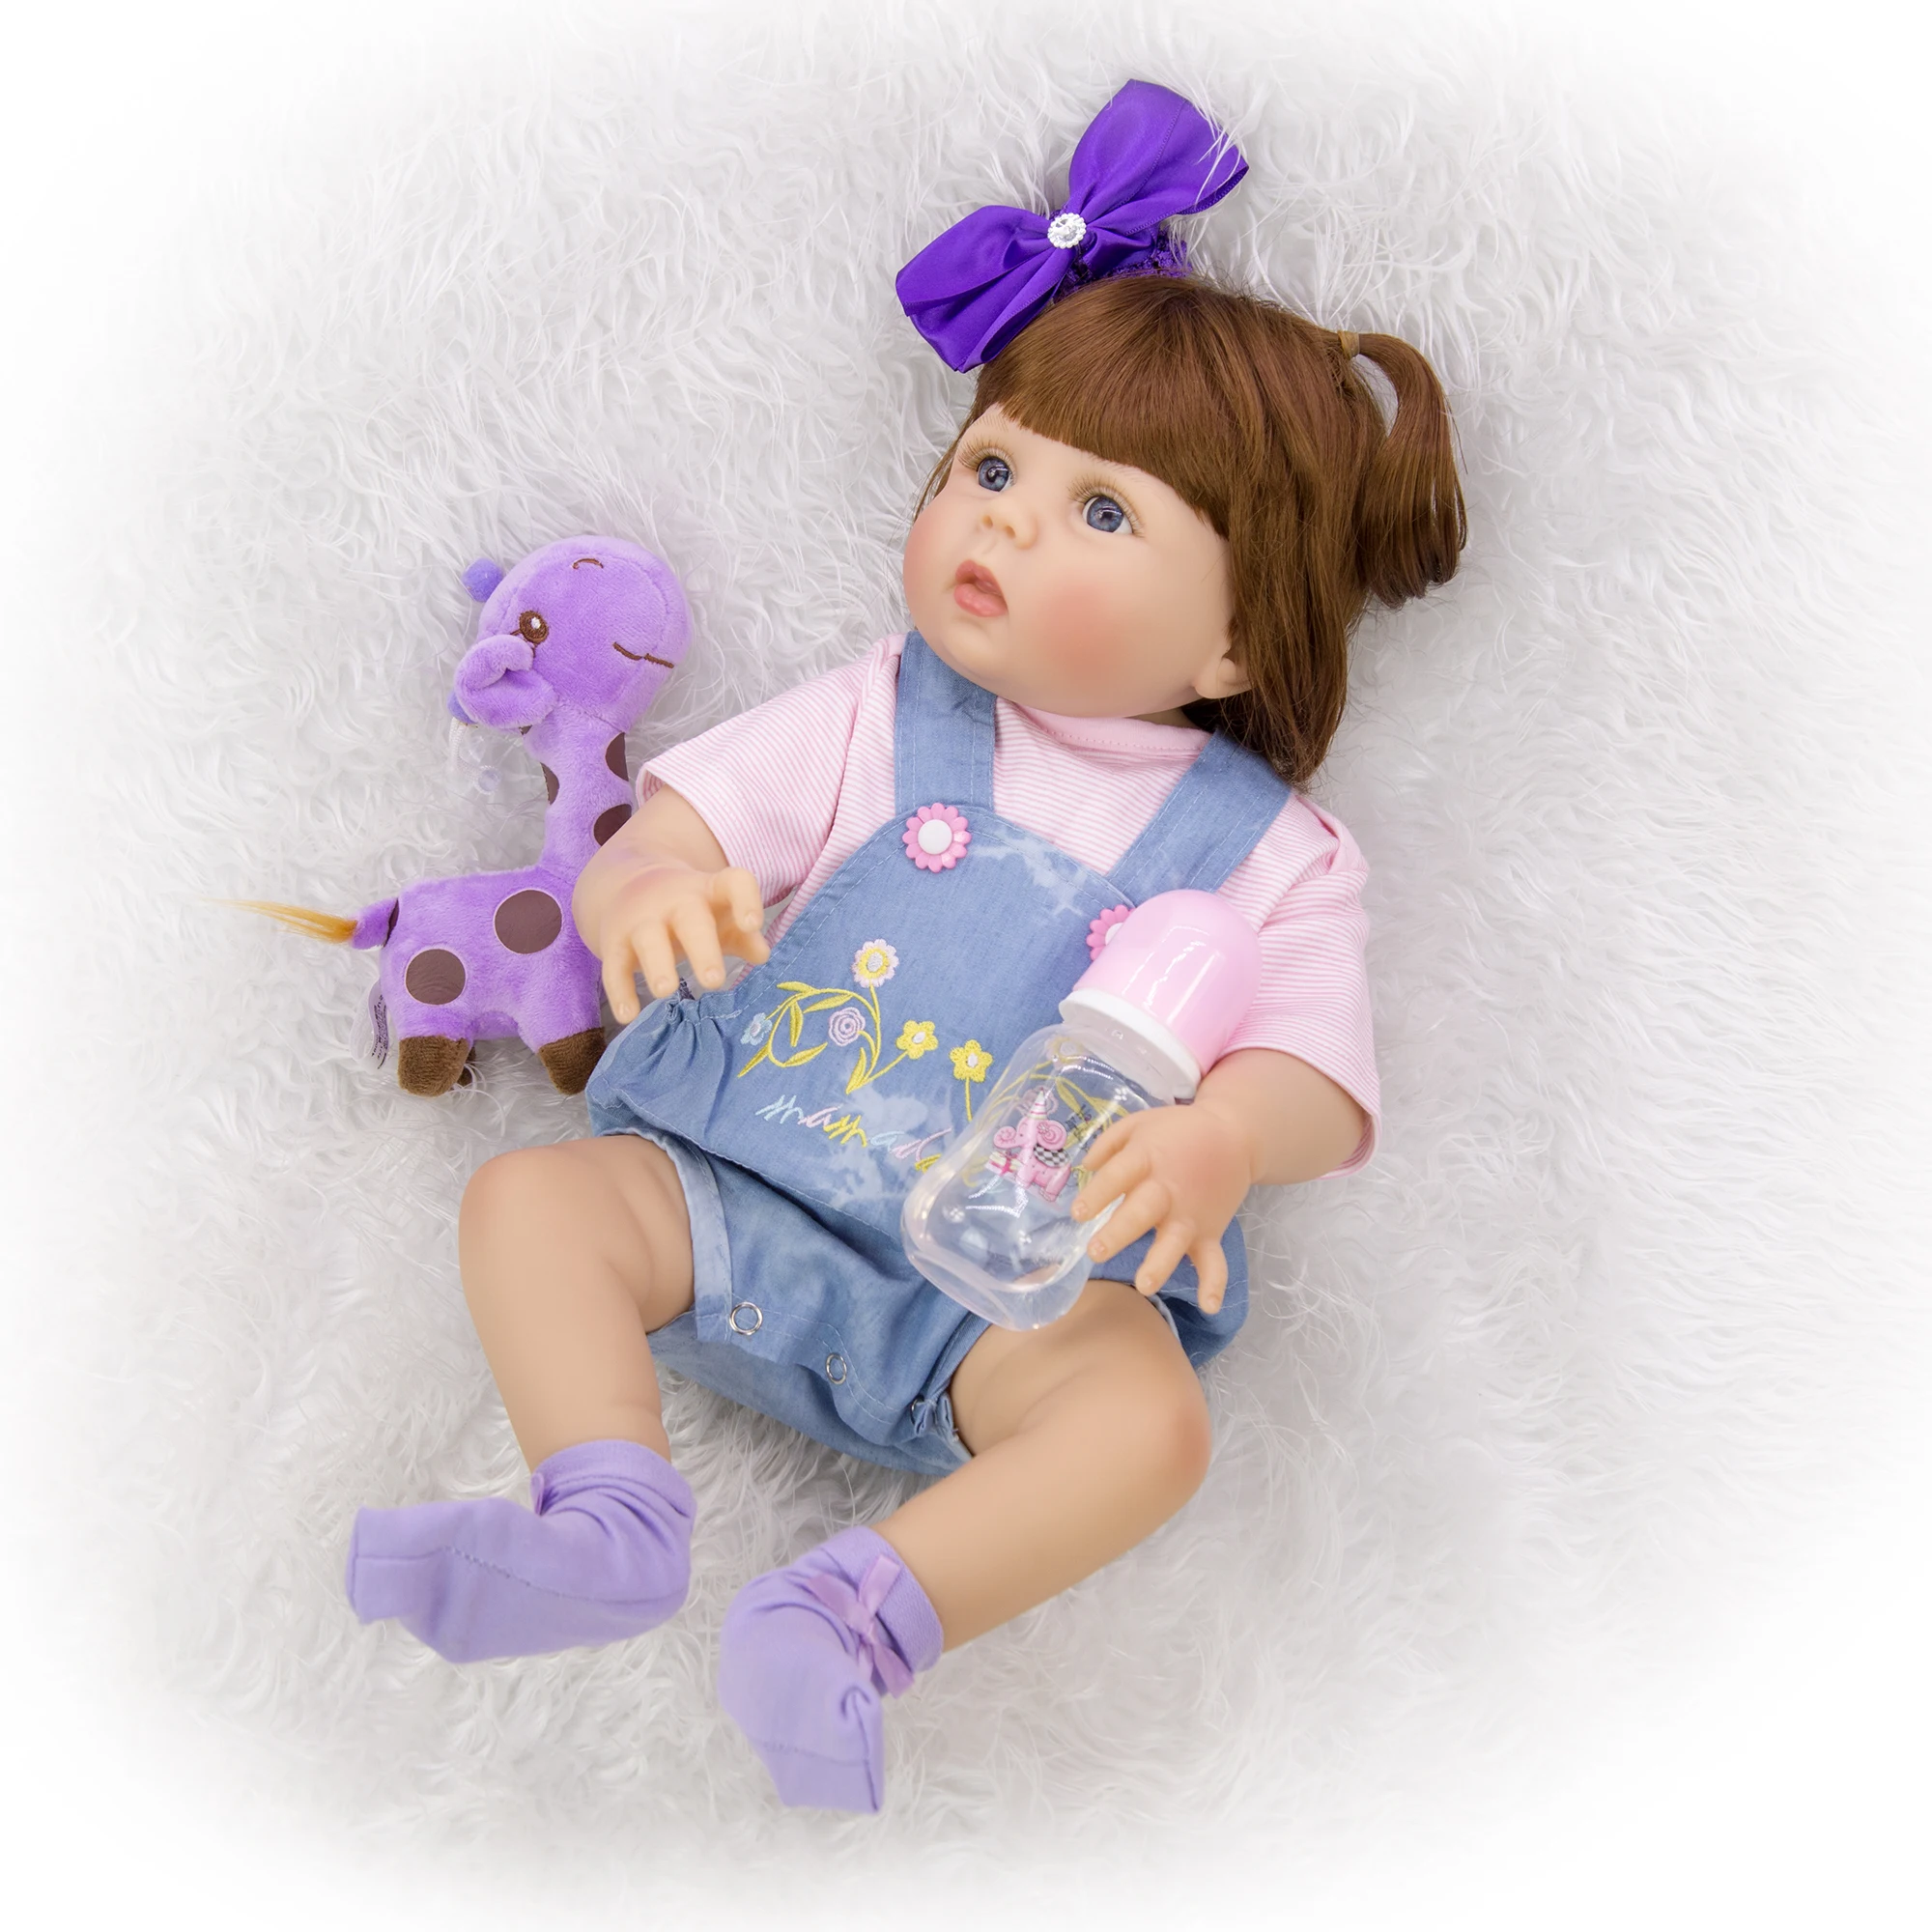 Реалистичная кукла Reborn Boneca 23 ''57 см, полностью силиконовая виниловая кукла для тела, милая кукла bebe для новорожденных, игрушка для девочек на день рождения, подарок на Рождество